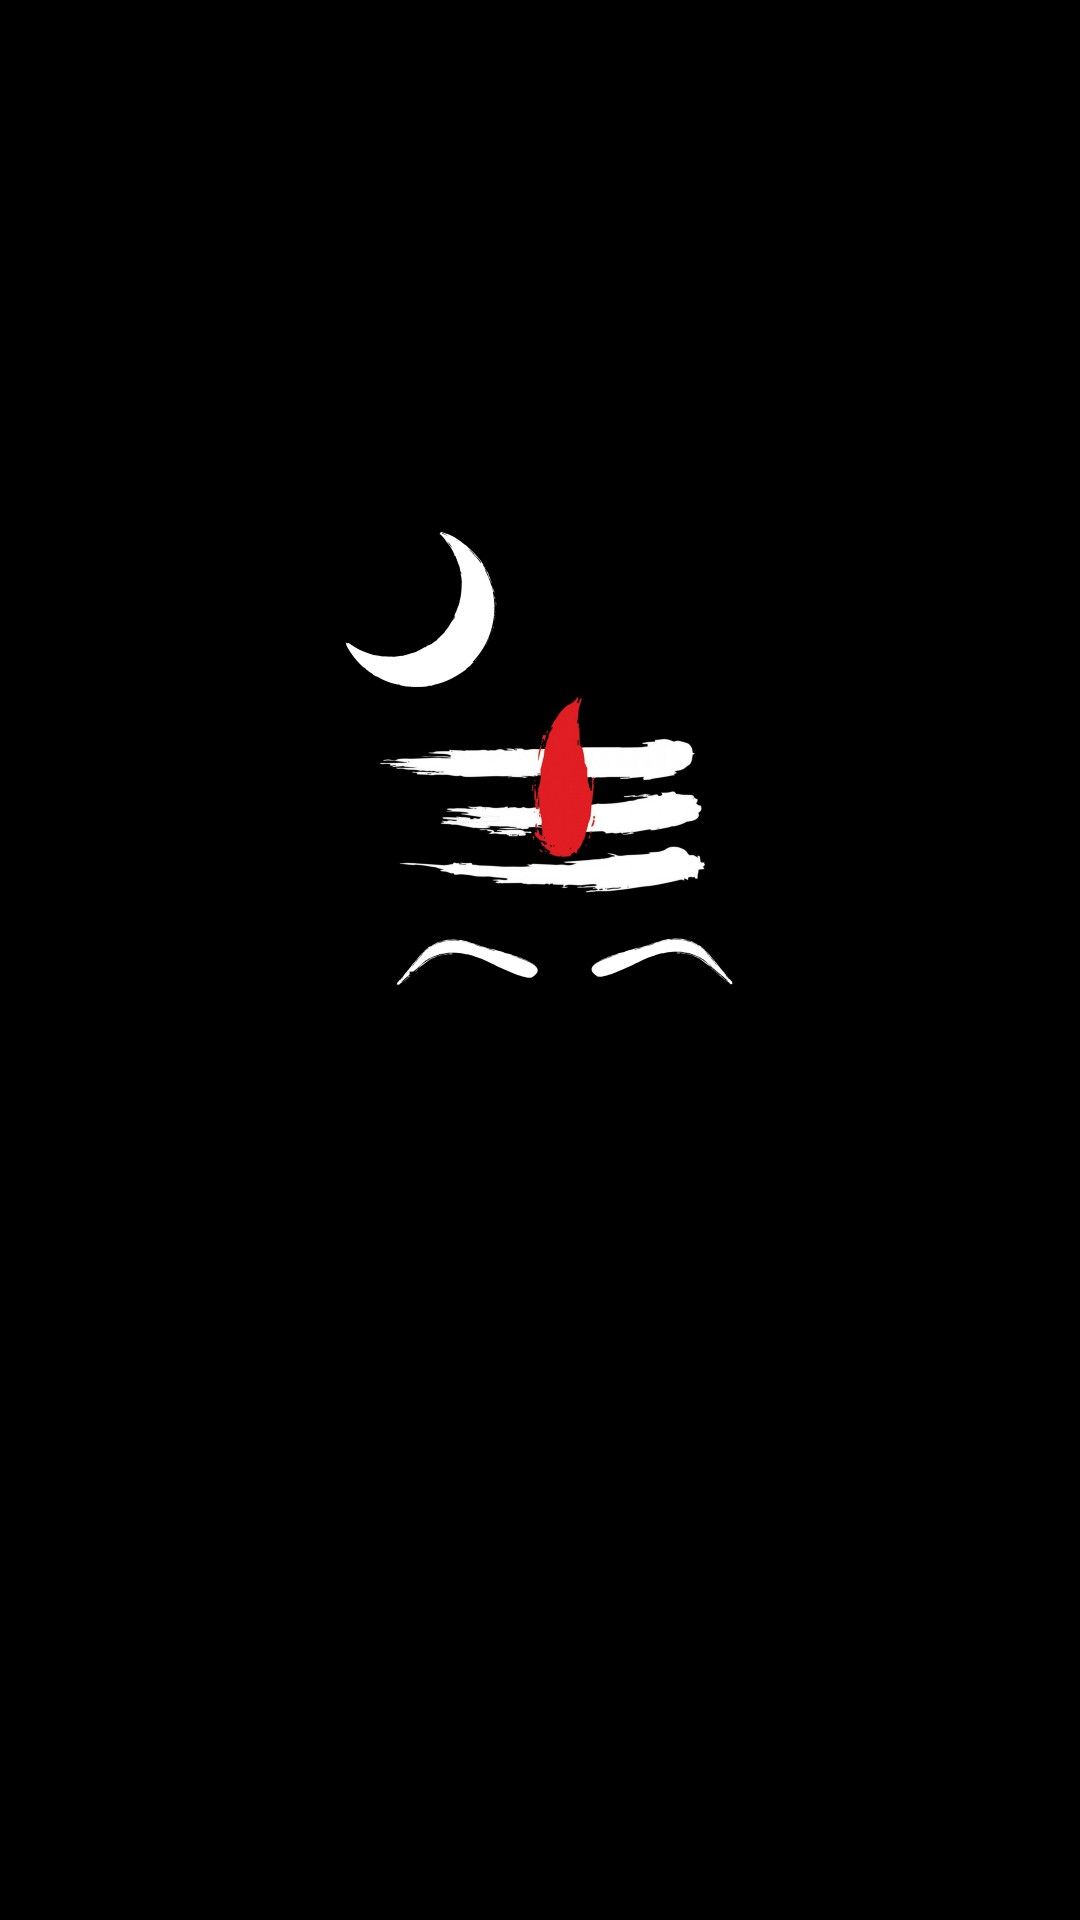 Lord Shiva logo :: Behance